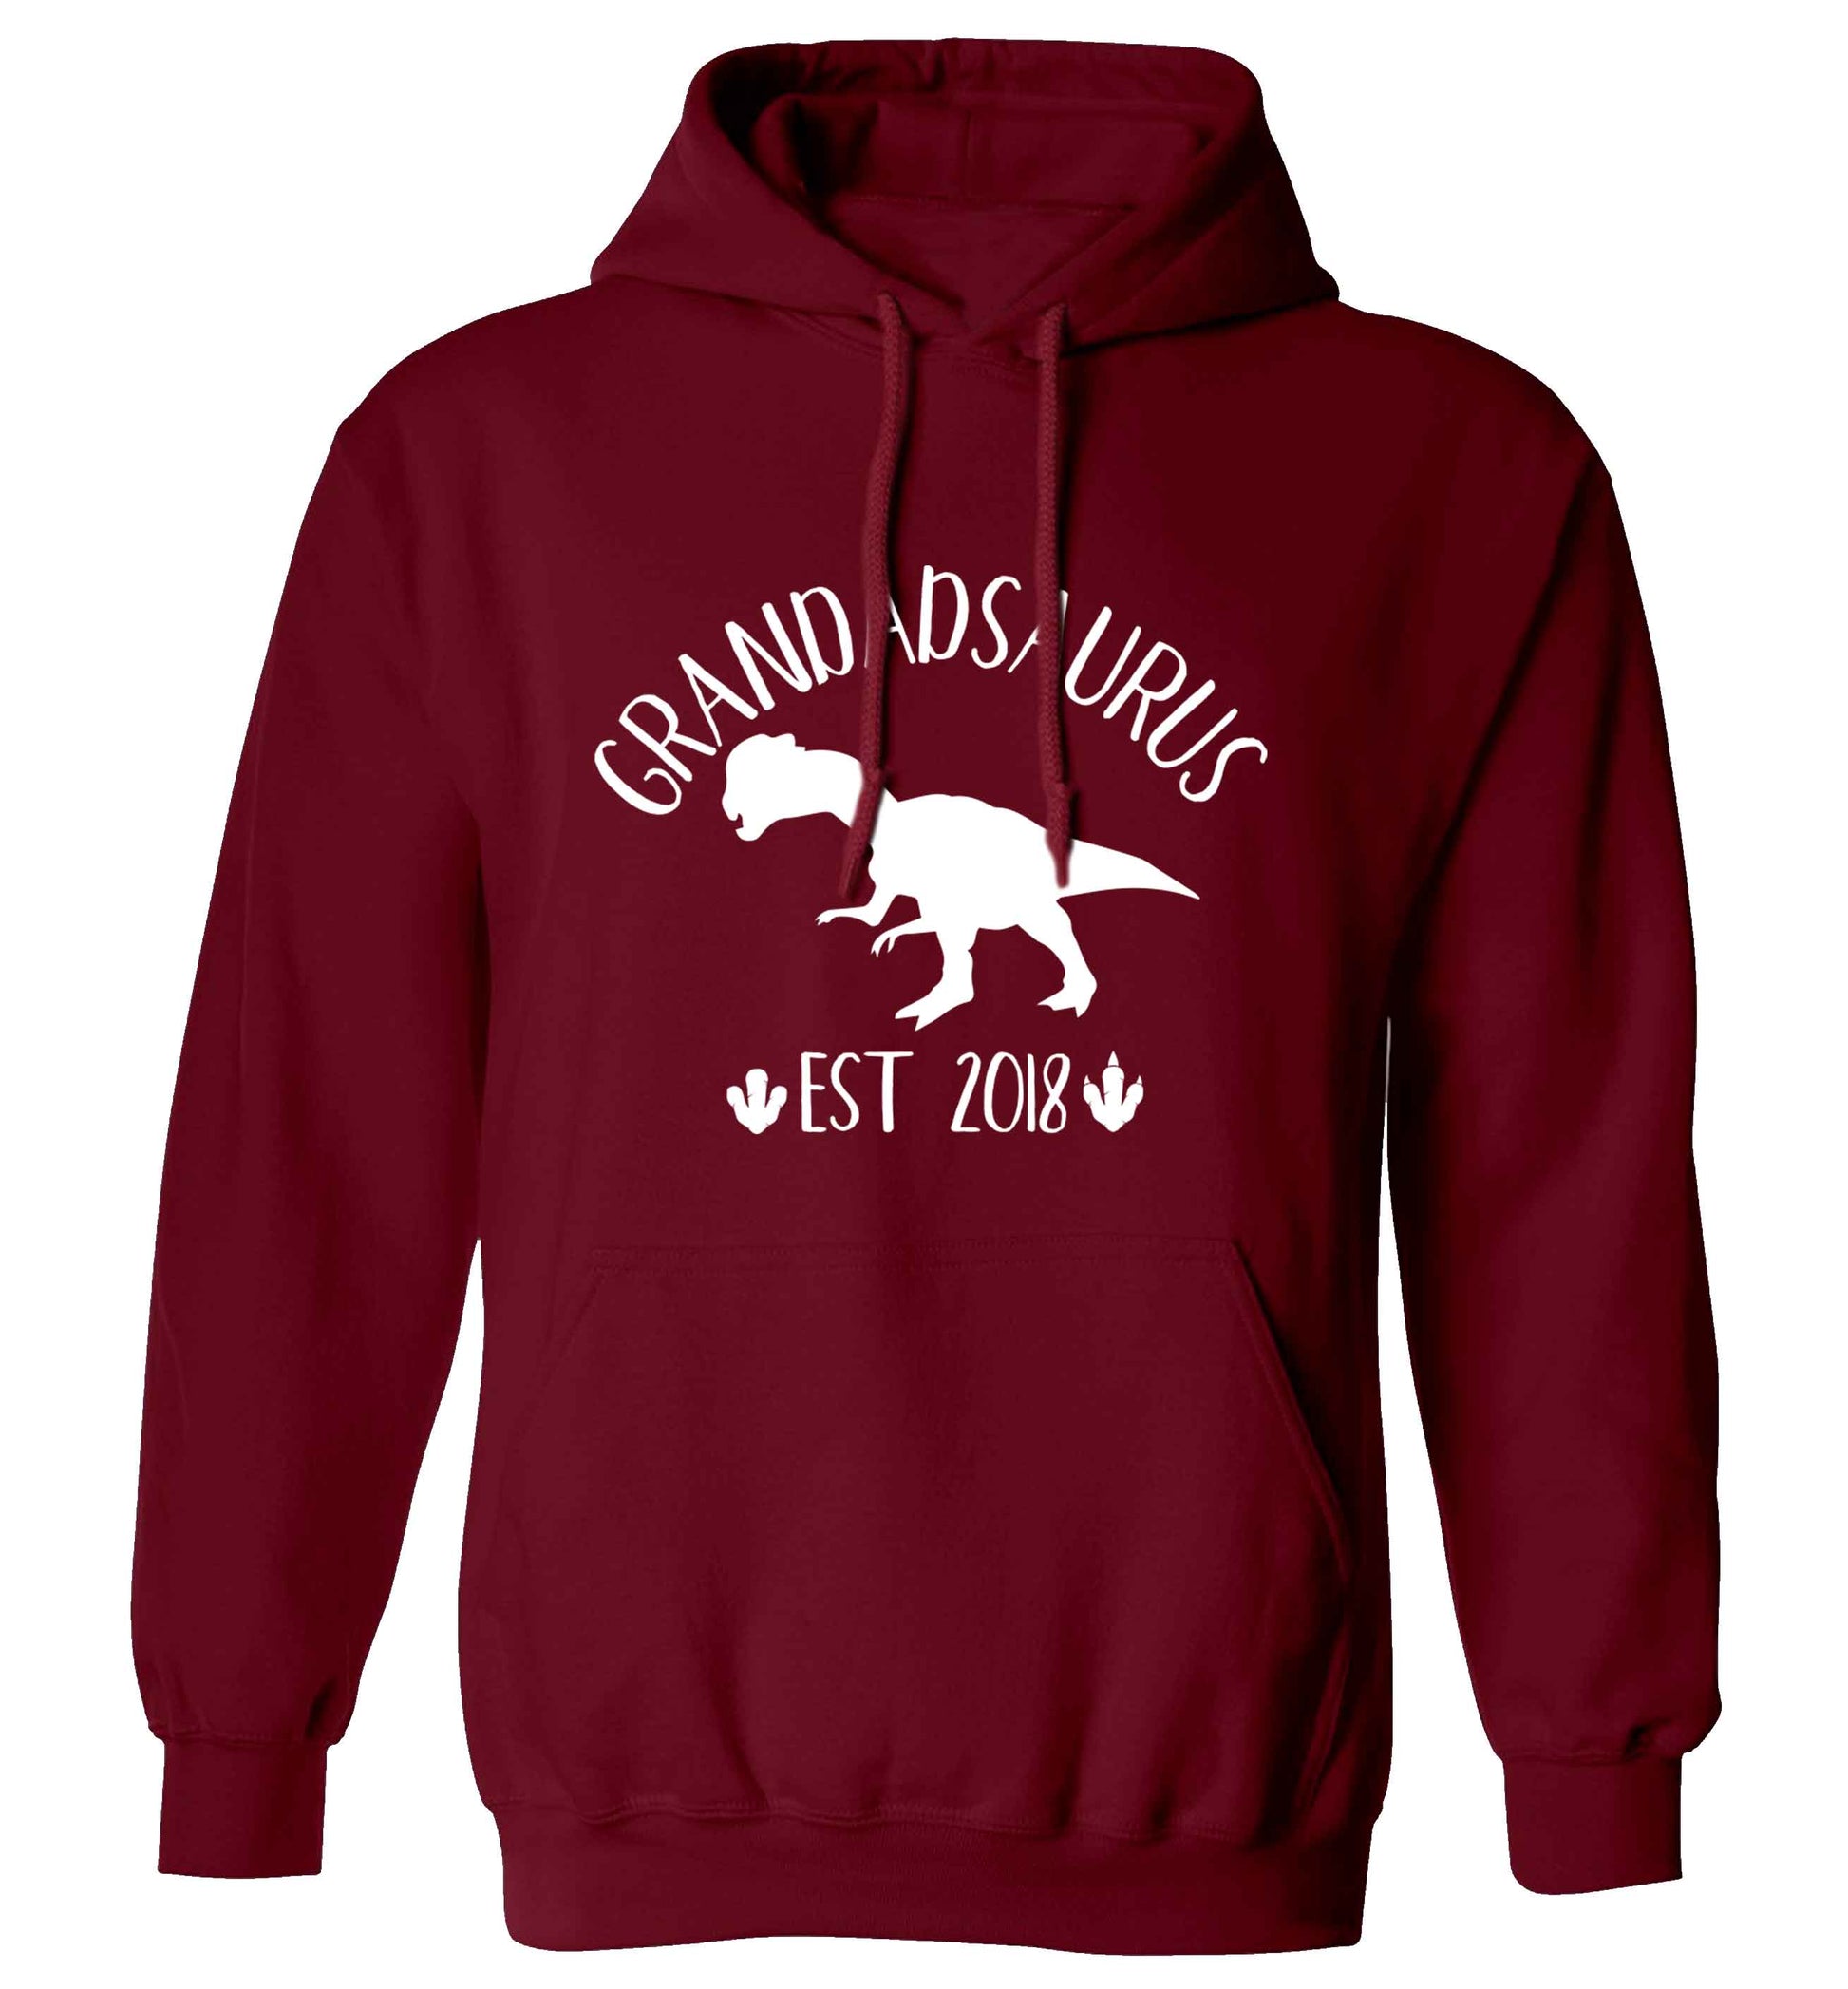 Personalised grandadsaurus since (custom date) adults unisex maroon hoodie 2XL